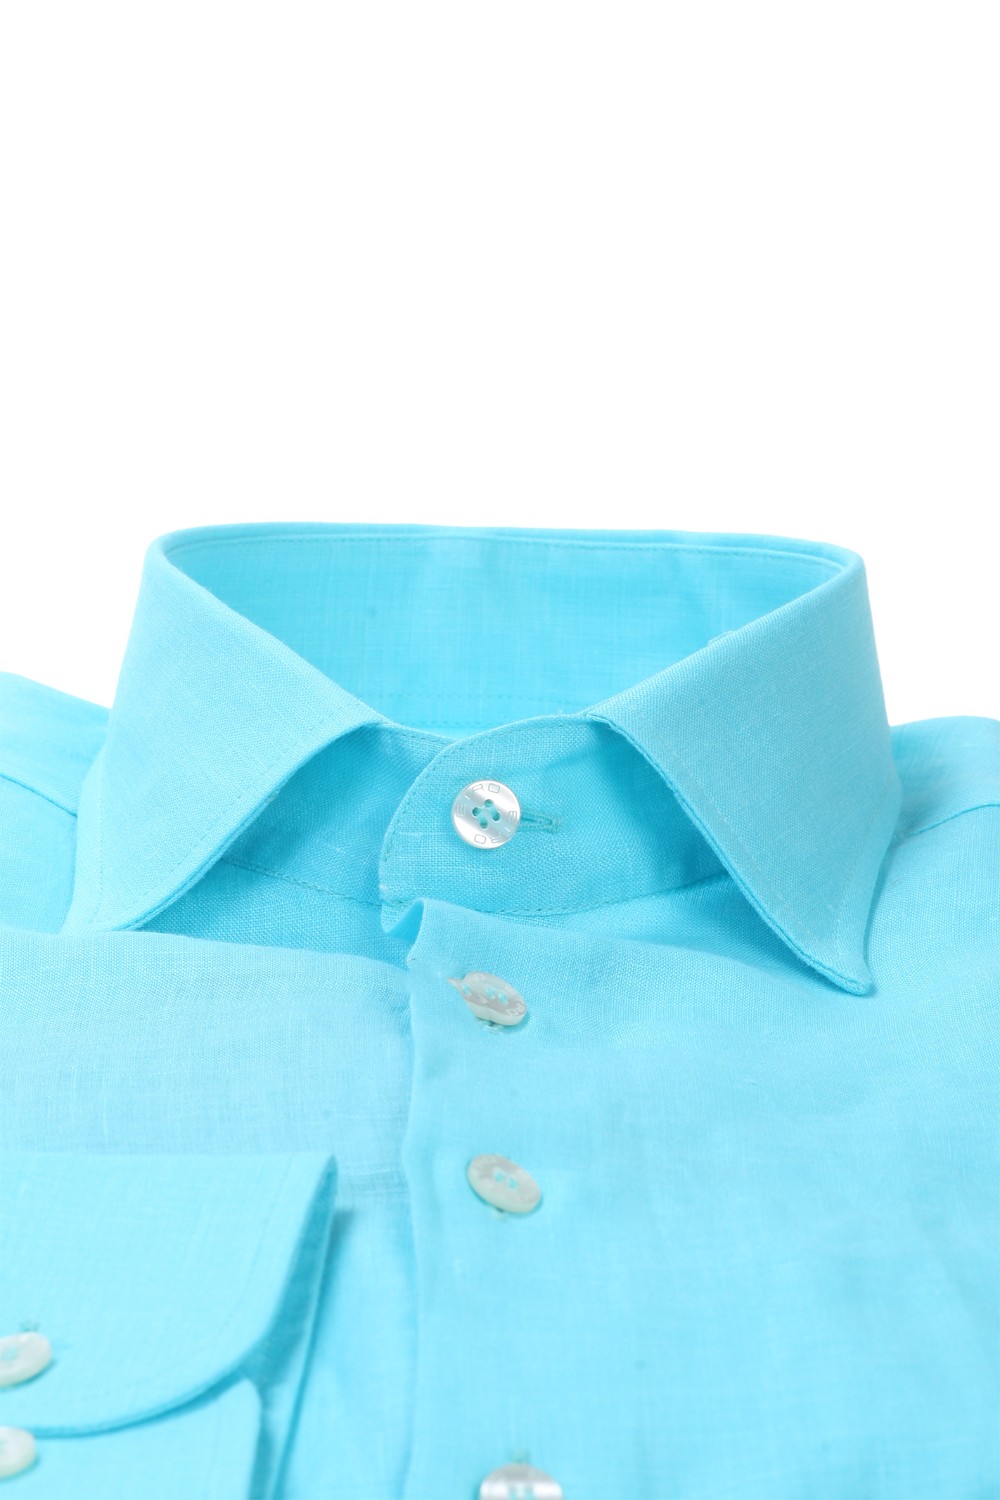 shop ETRO Saldi Camicia: Etro camicia turchese in lino.
Collo morbido, vestibilità regular.
Logo con pegaso Etro di colore blu. 
100 % lino
Made in Italy. 1K526-6119 0250 number 4648944